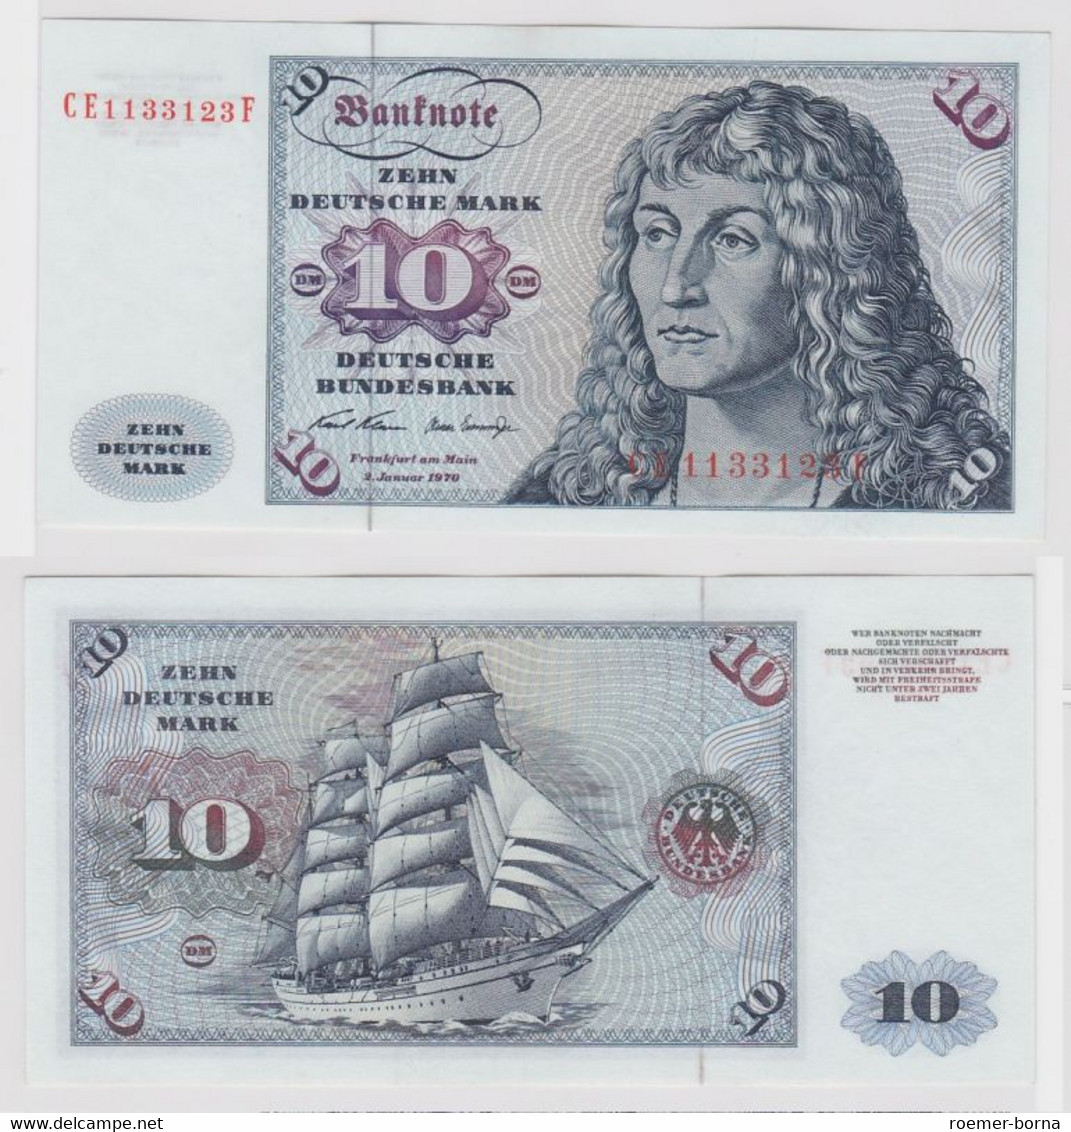 T147497 Banknote 10 DM Deutsche Mark Ro. 270b Schein 2.Jan. 1970 KN CE 1133123 F - 10 DM